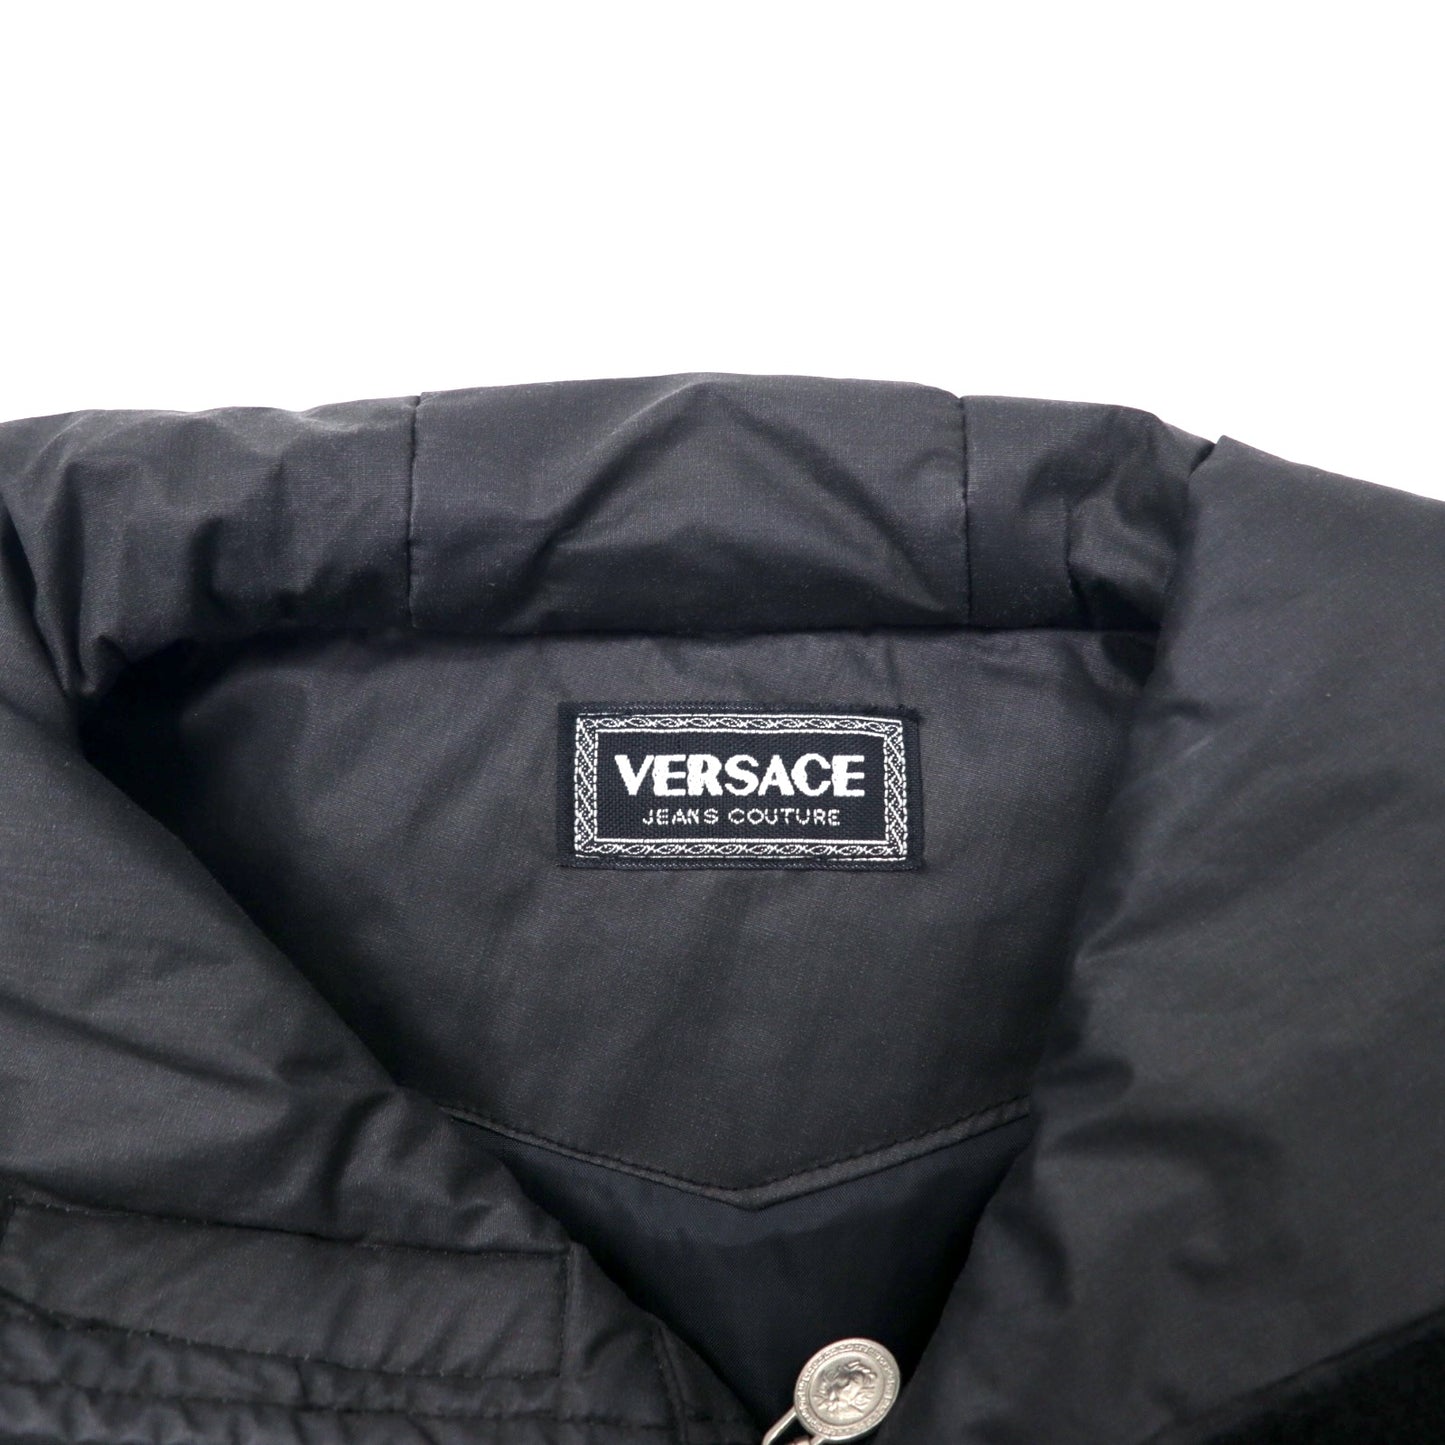 VERSACE JEANS COUTURE イタリア製 フィールドパーカー ナイロンジャケット L ブラック メデューサ ロゴ刺繍